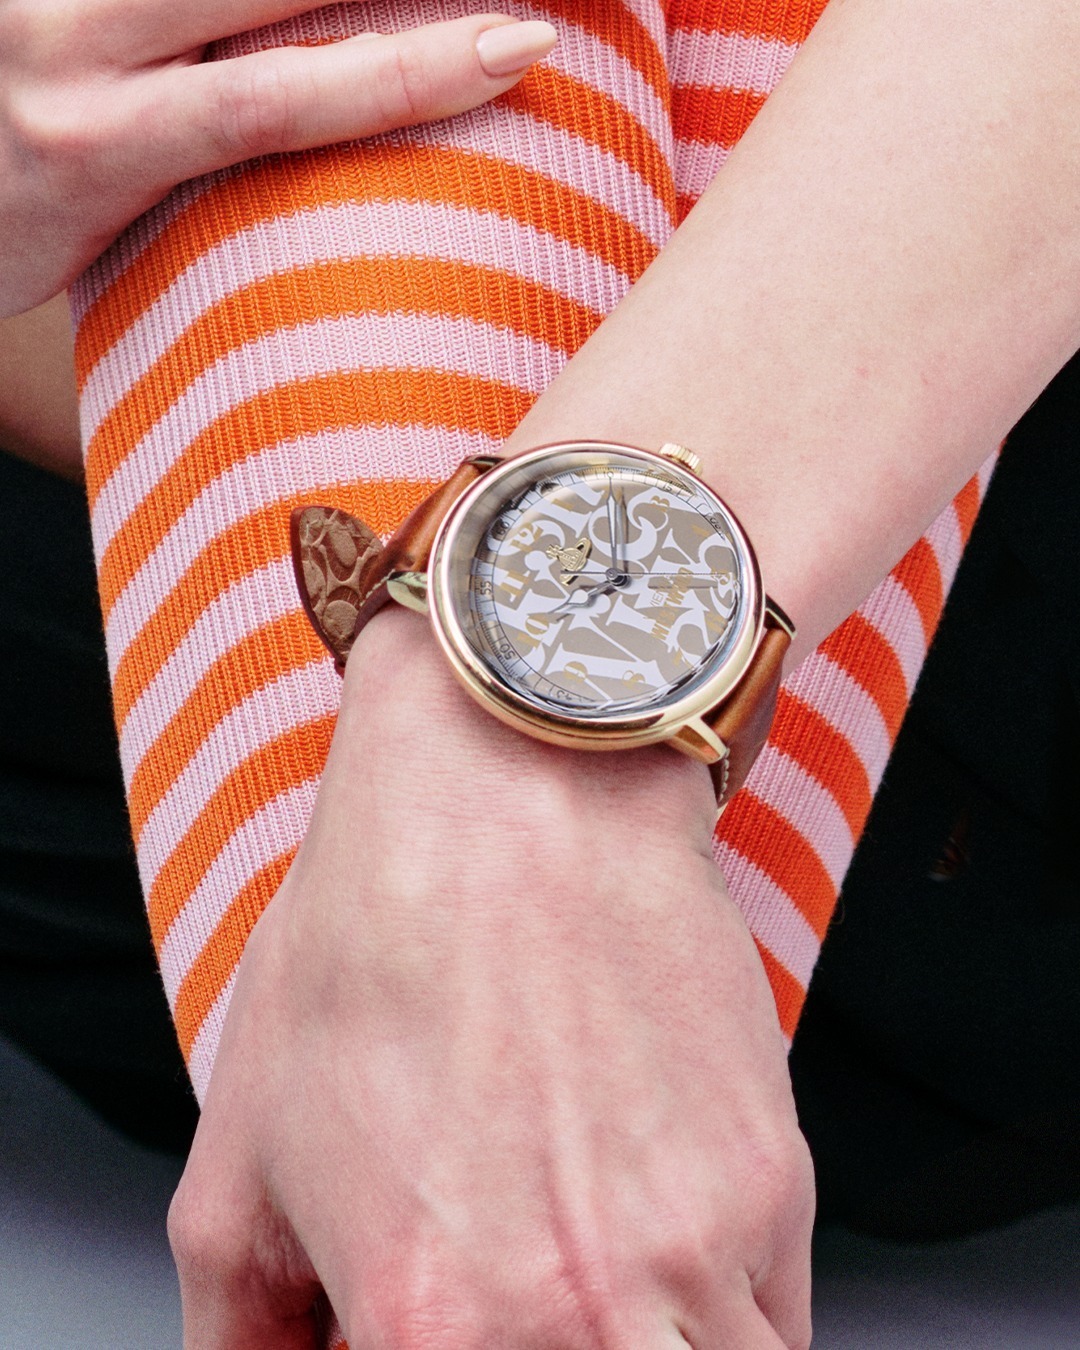 ヴィヴィアン・ウエストウッドの新作腕時計、「オーブ」輝く文字盤 